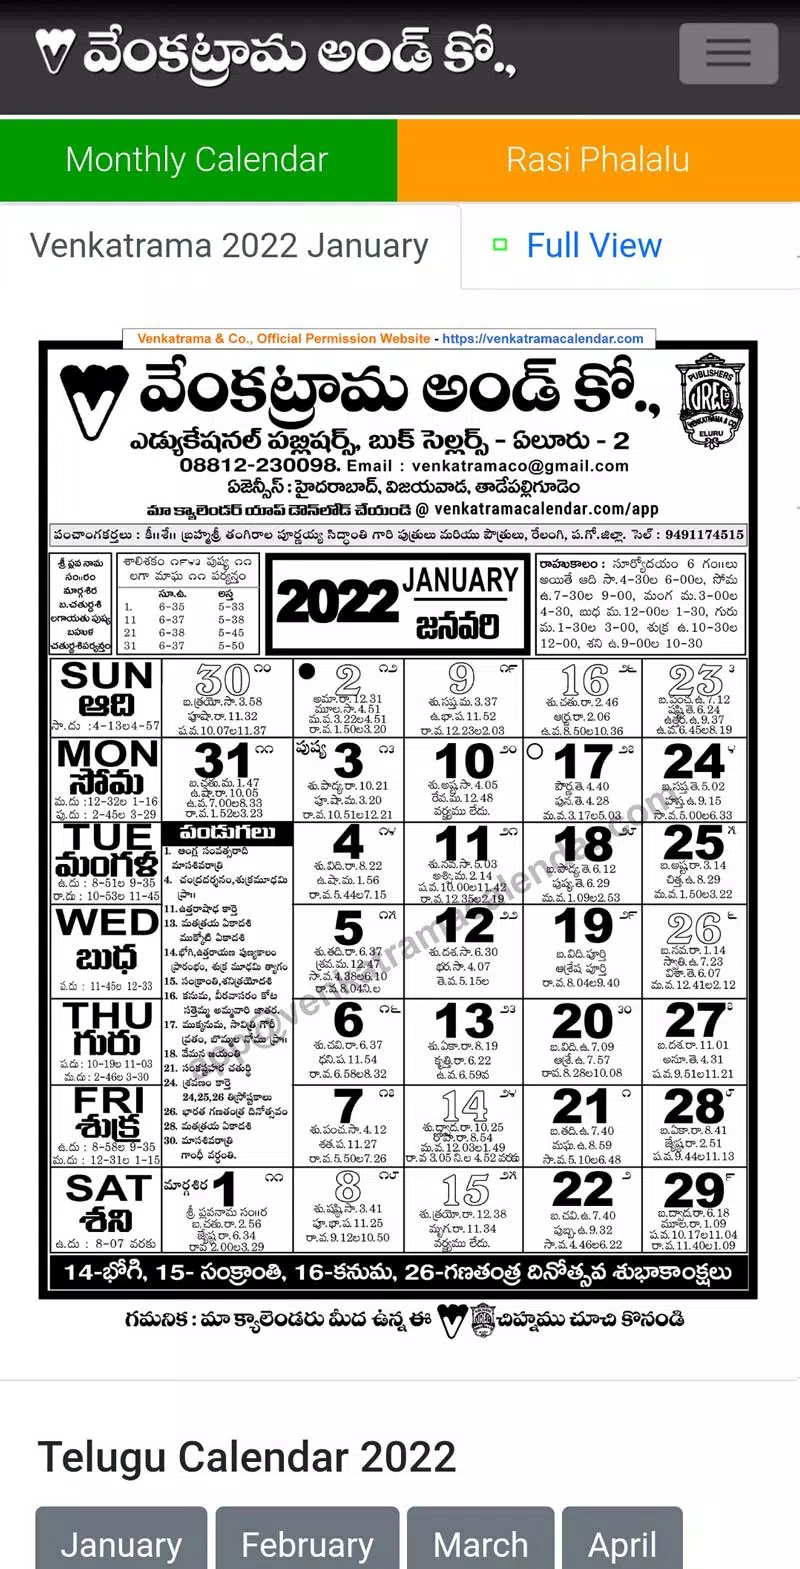 May 2022 Telugu Calendar Venkatrama.Venkatrama Rasi Phalalu 2022 For Android Apk Download